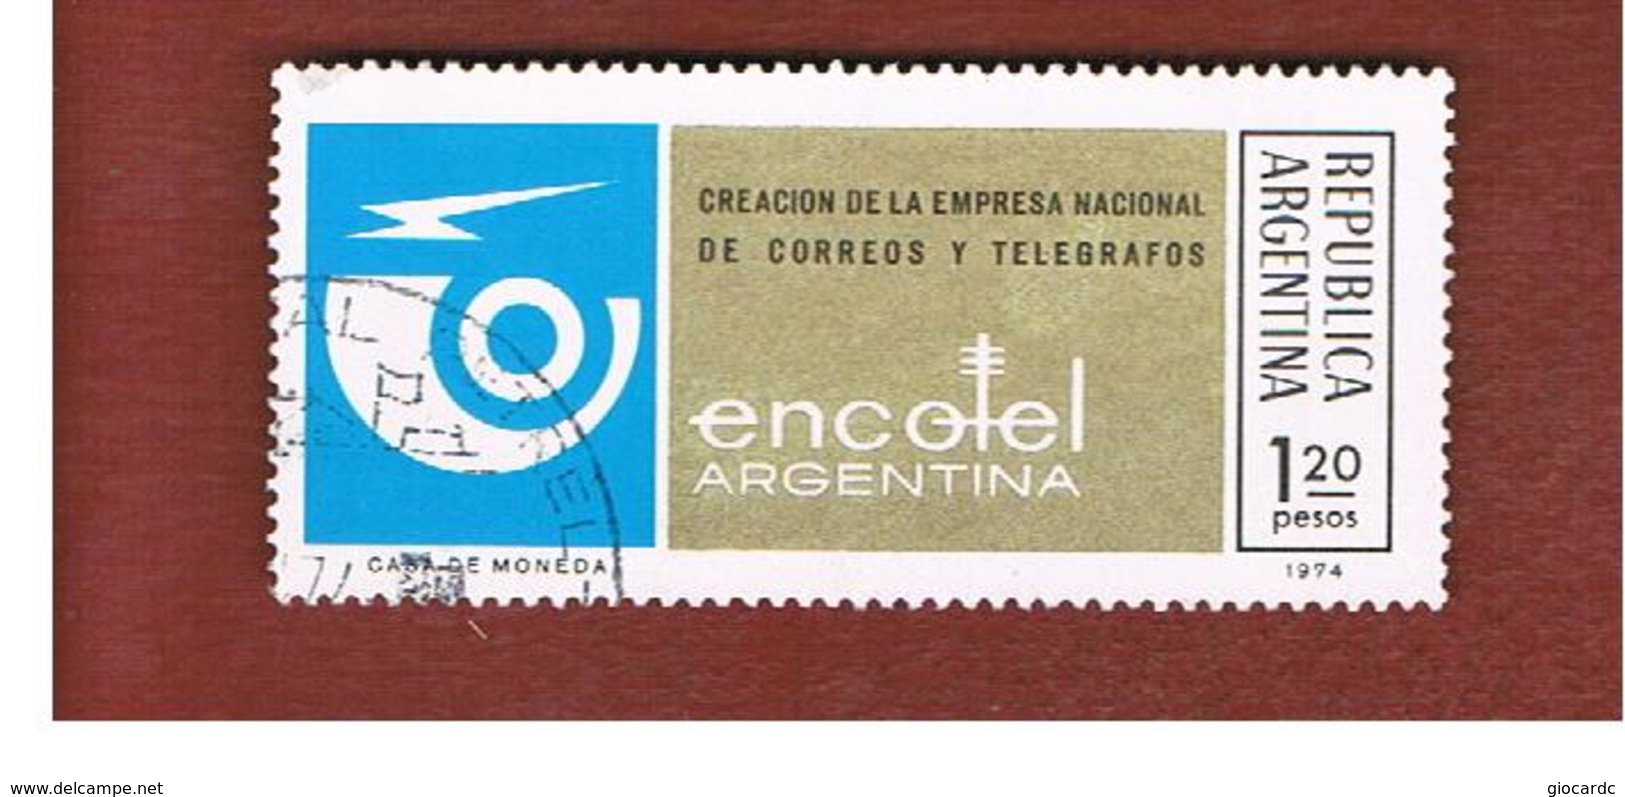 ARGENTINA - SG 1445  - 1974  ENCOTEL   -   USED ° - Usati